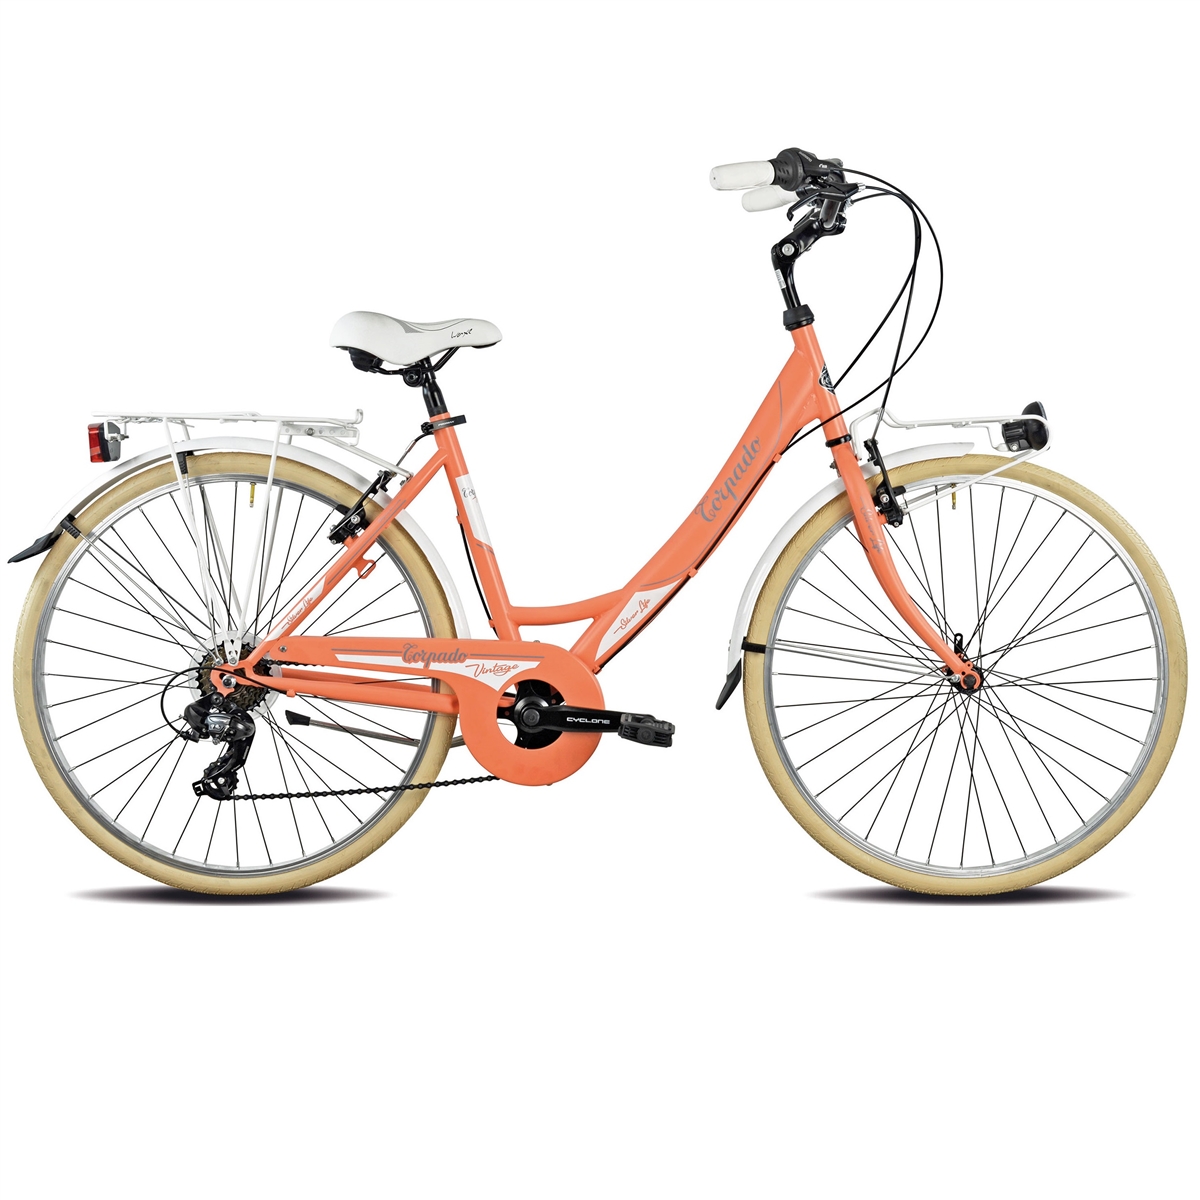 bici city T120 silverlife 26'' donna acciaio 6 velocità arancione Pesca